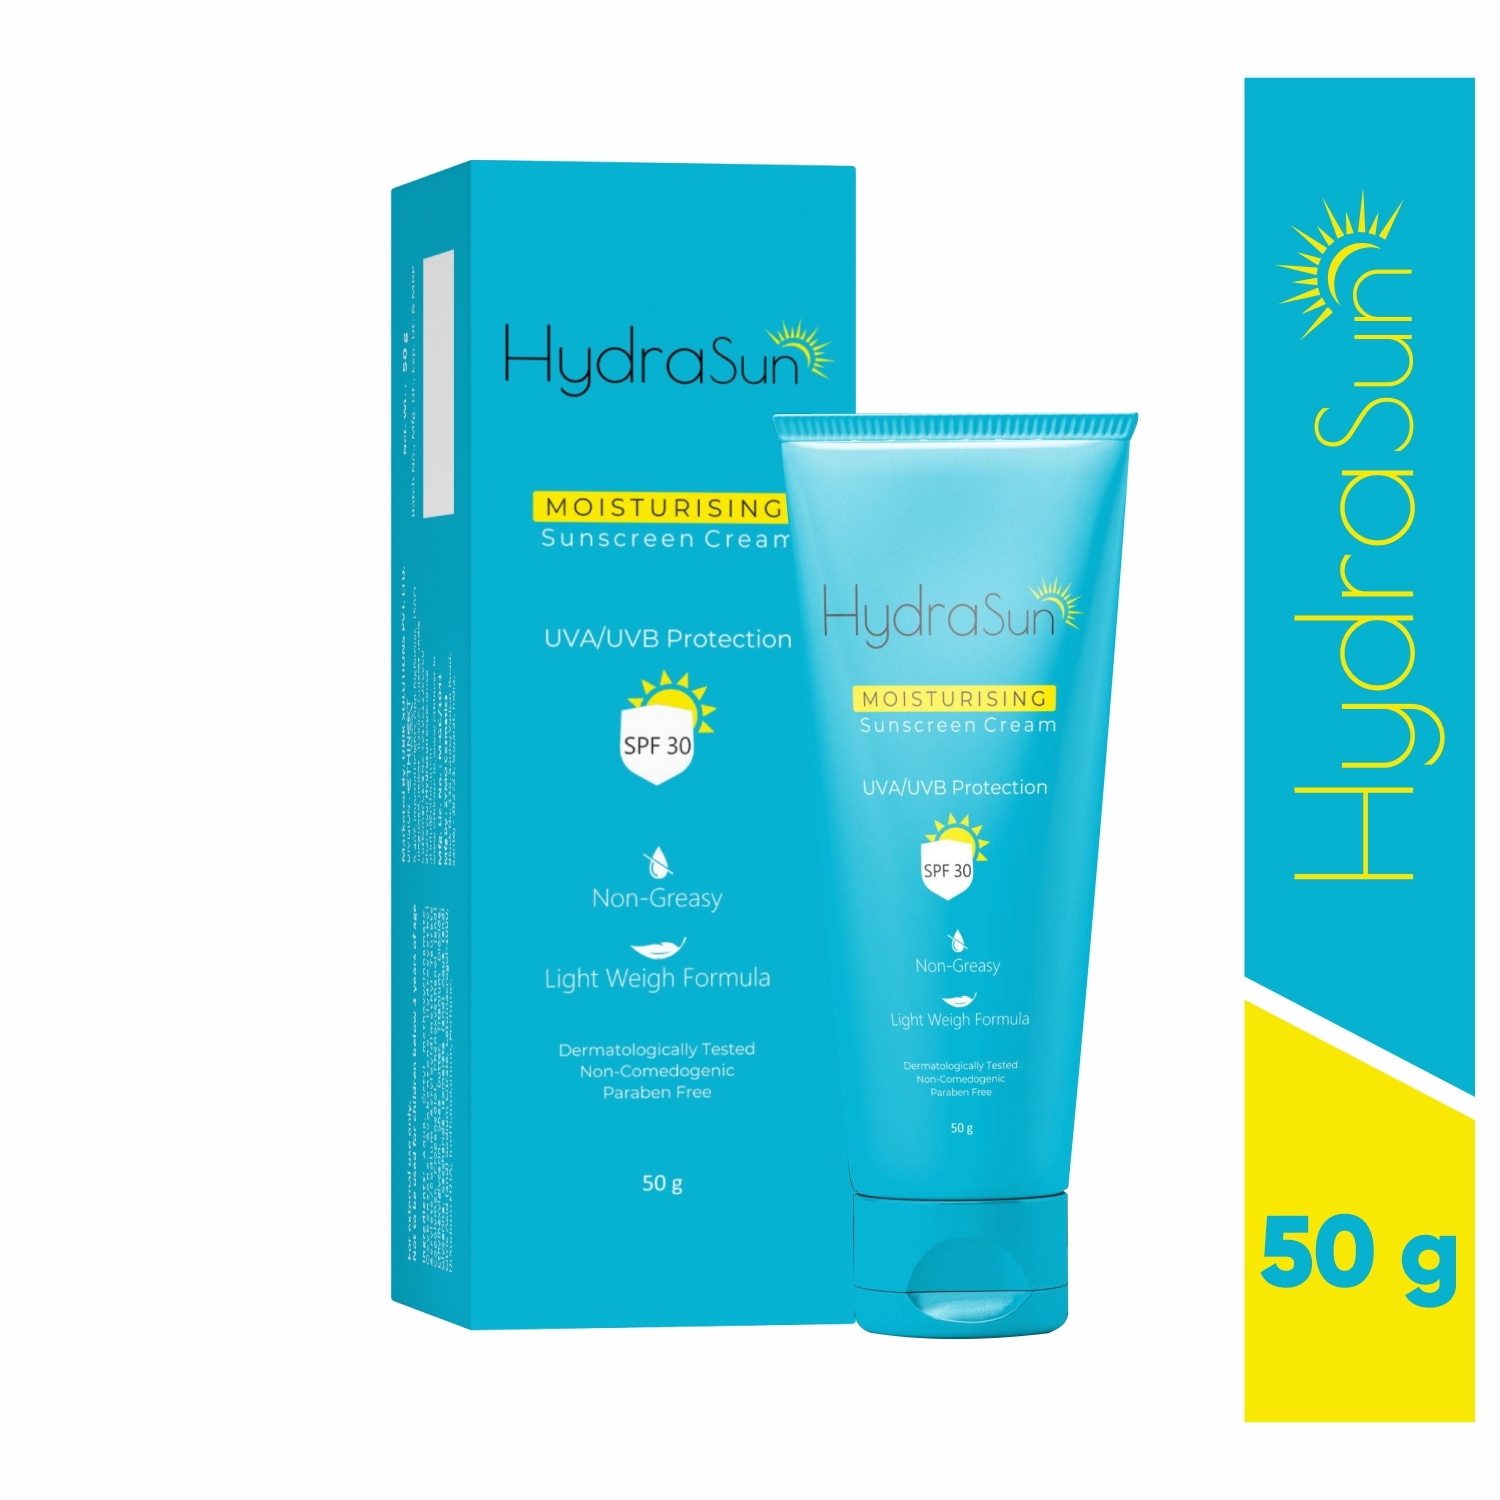 HYDRASUN | Hydrasun Moisturising Sunscreen cream